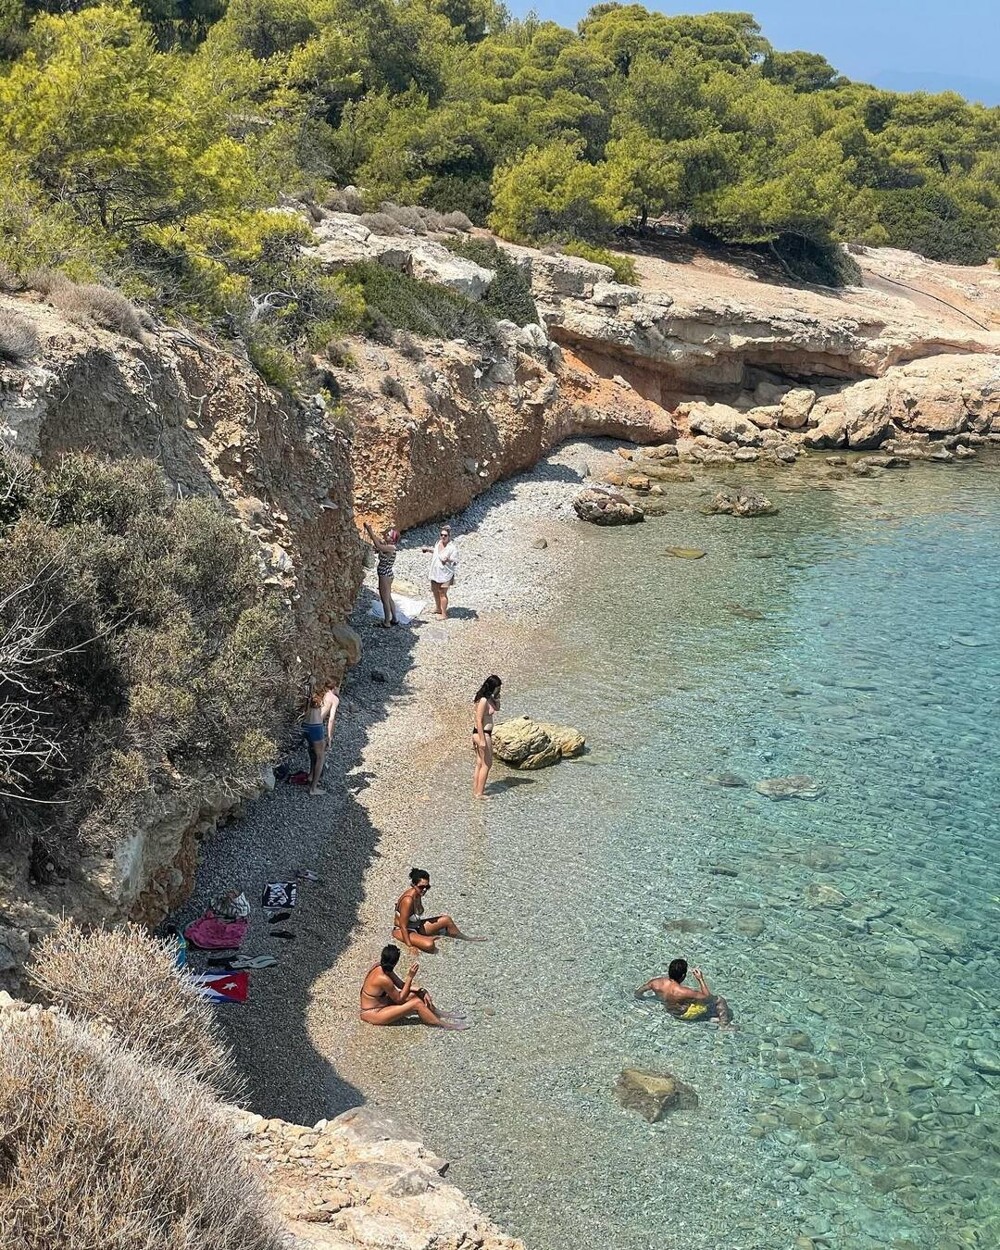 Греческий остров, где никто не живет и экзотические животные свободно разгуливают по песчаным пляжам